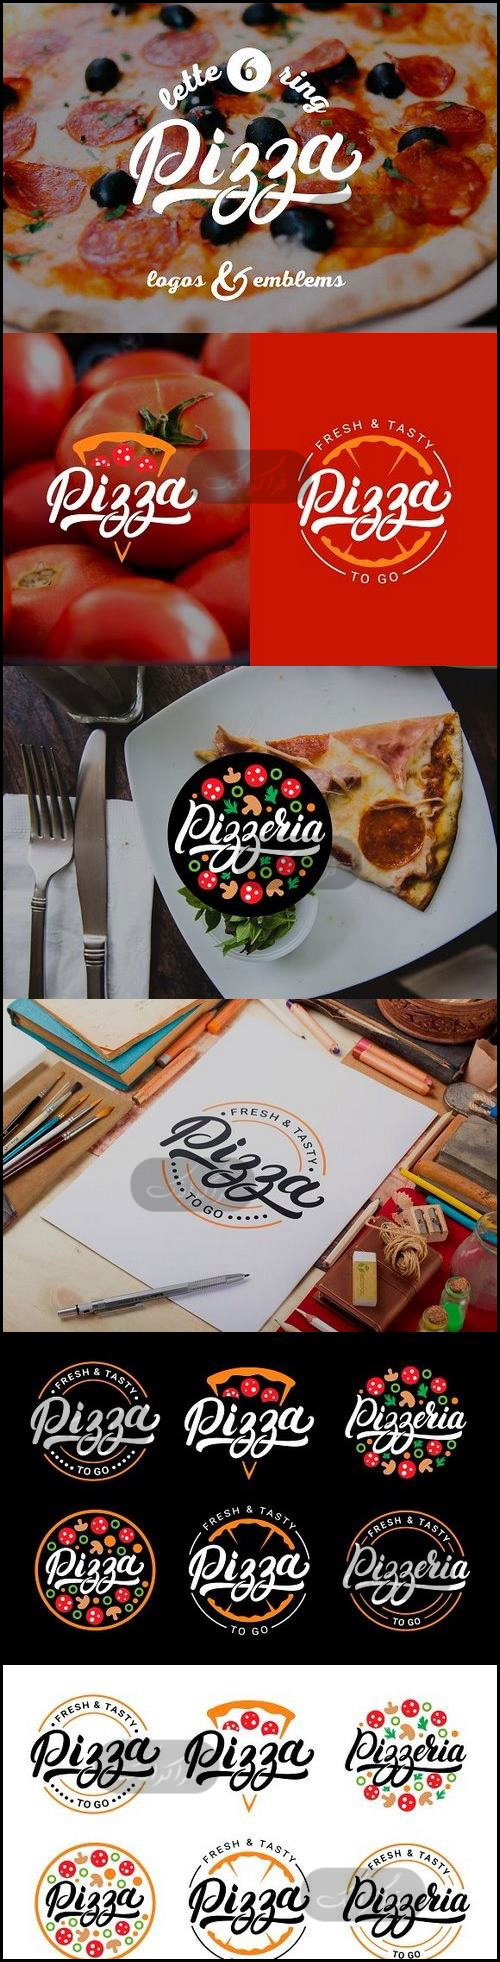 دانلود لوگو های پیتزا Pizza Logos - شماره 2